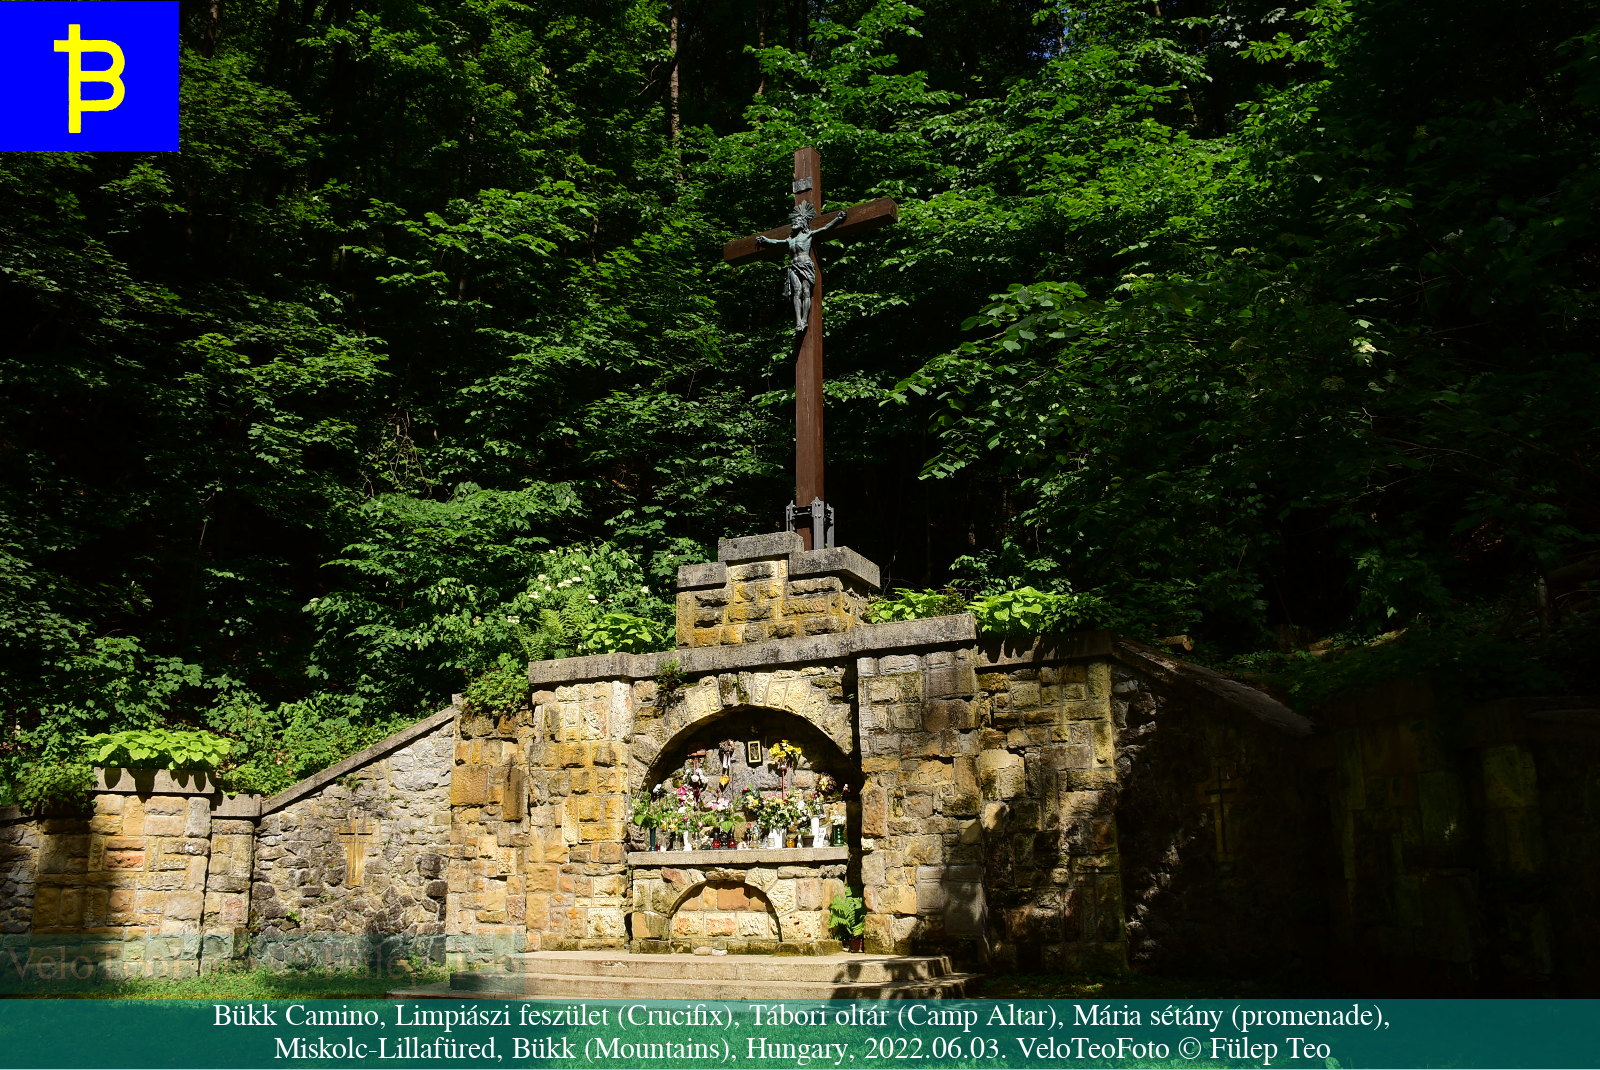 Limpiászi feszület, Lillafüred, Bükk; Spirituális túra: Bükk Camino élménybeszámoló, Miskolc–Eger